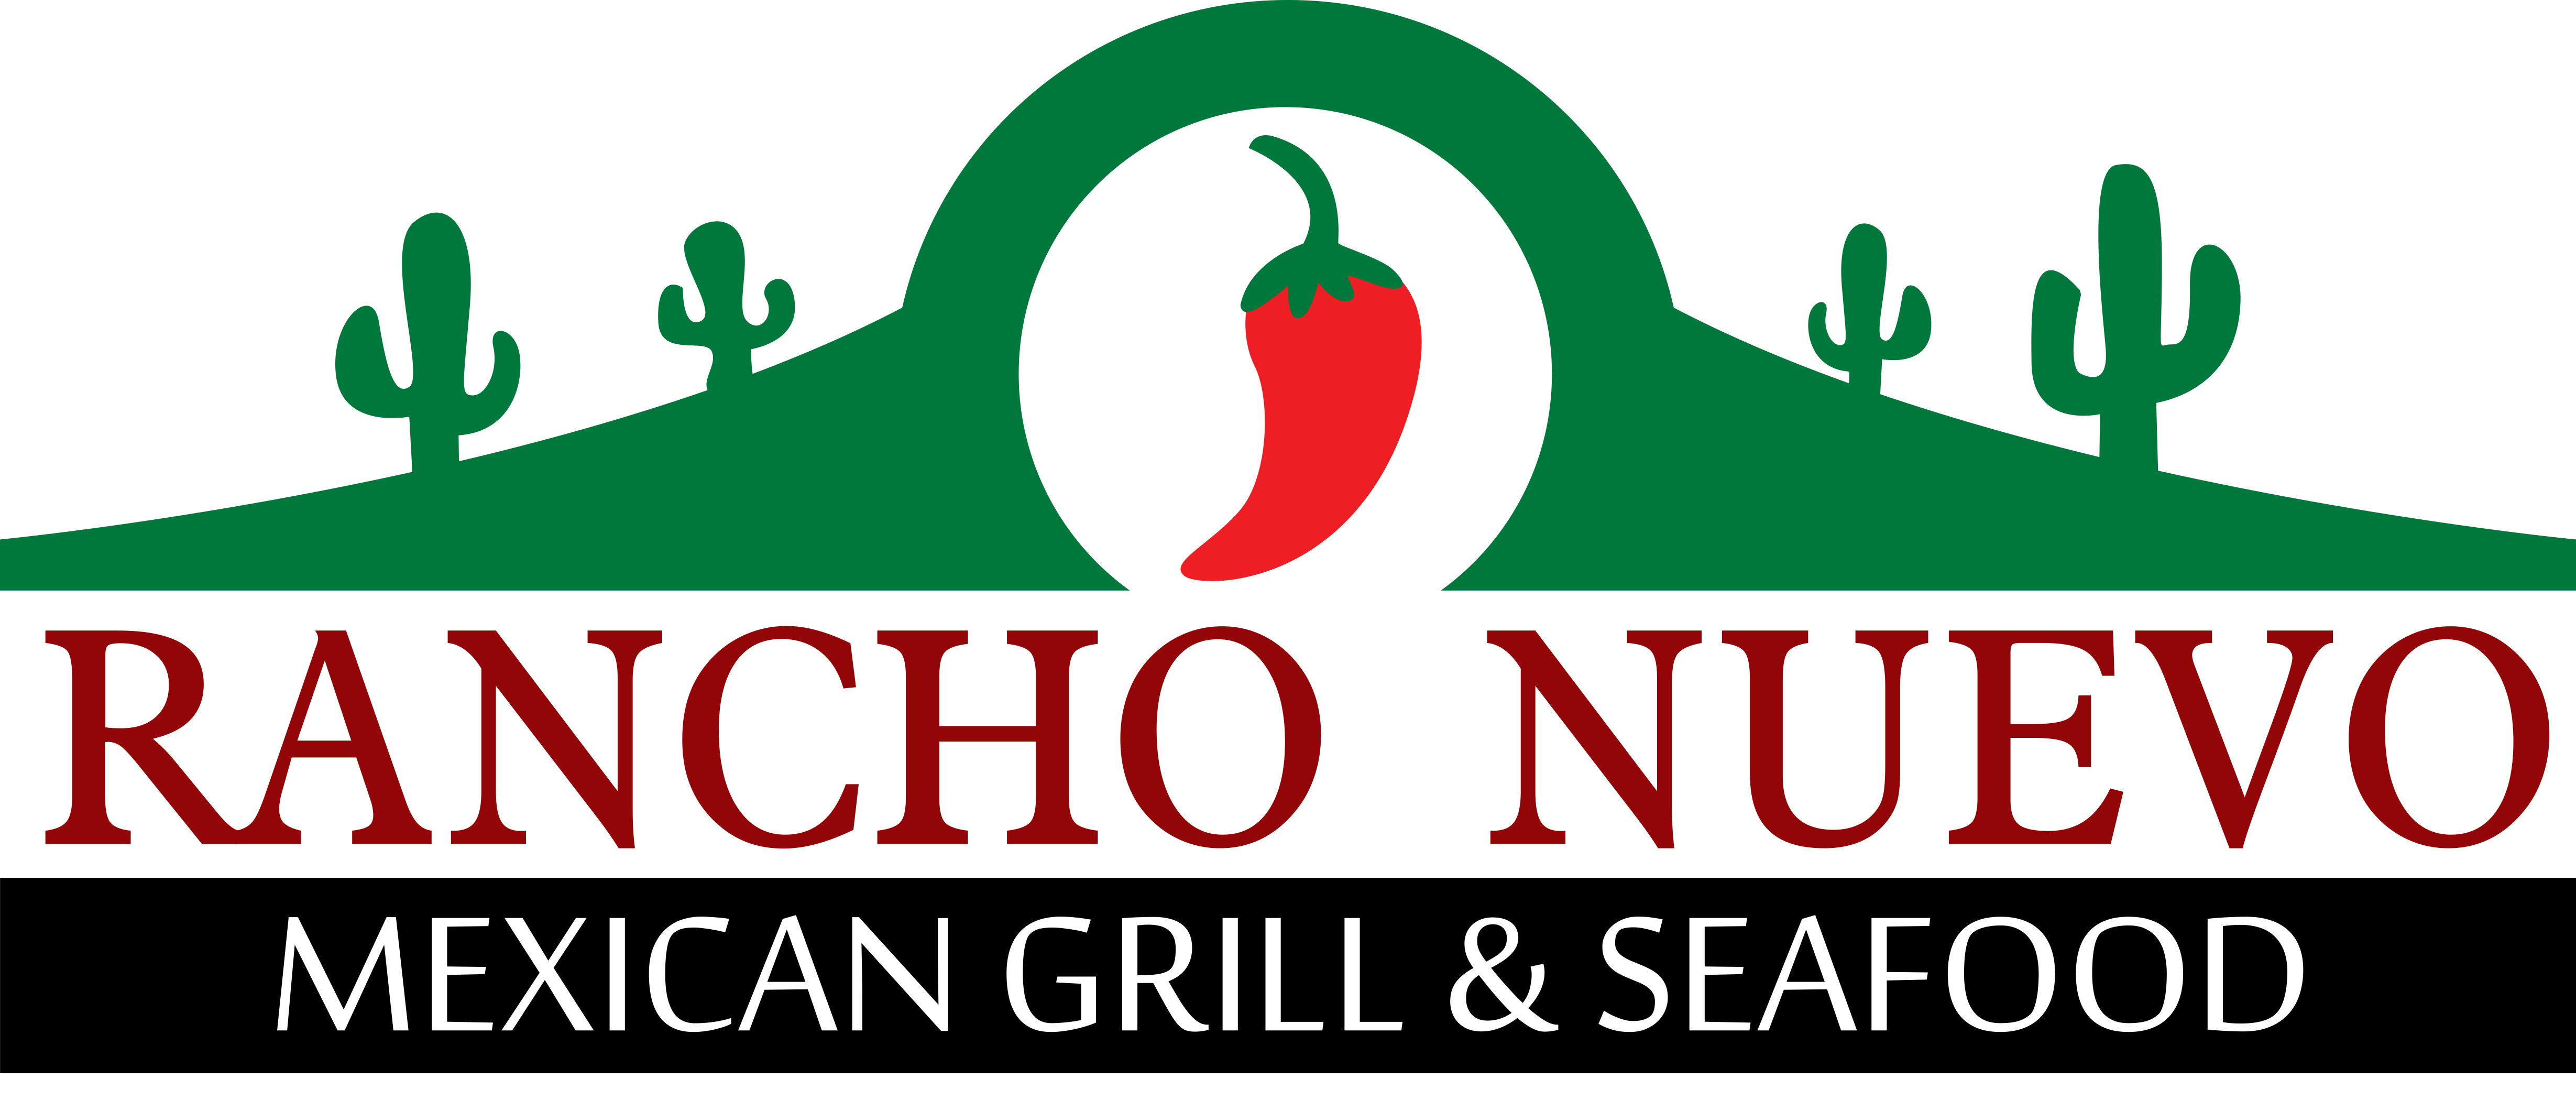 Rancho Nuevo Mexican Grill & Seafood logo